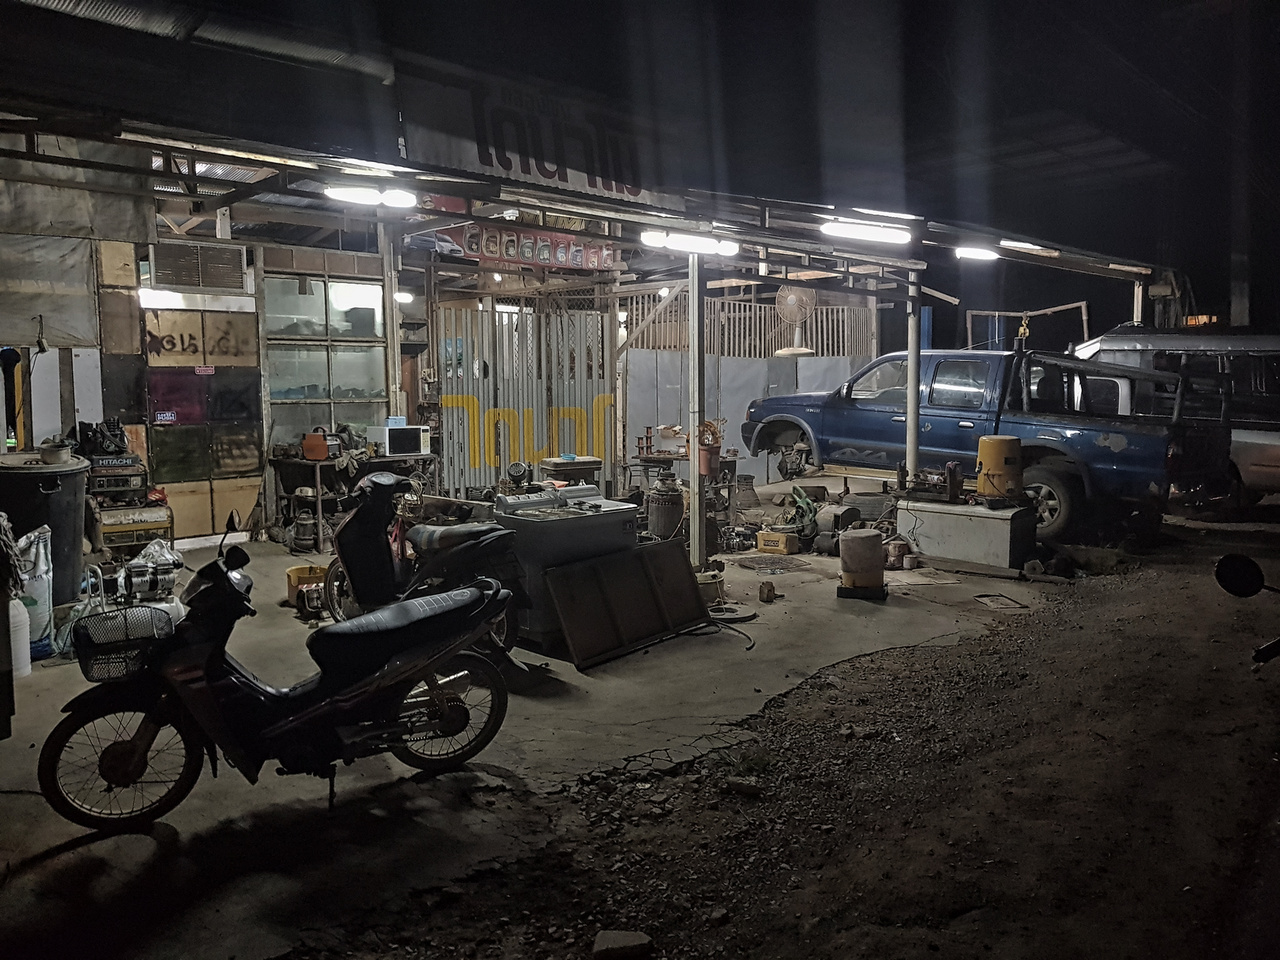 Éjjel-nappali autószerviz Ao Nangon. Rengeteg hasonló színvonalú műhelybe lehet beleakadni úton-útfélen